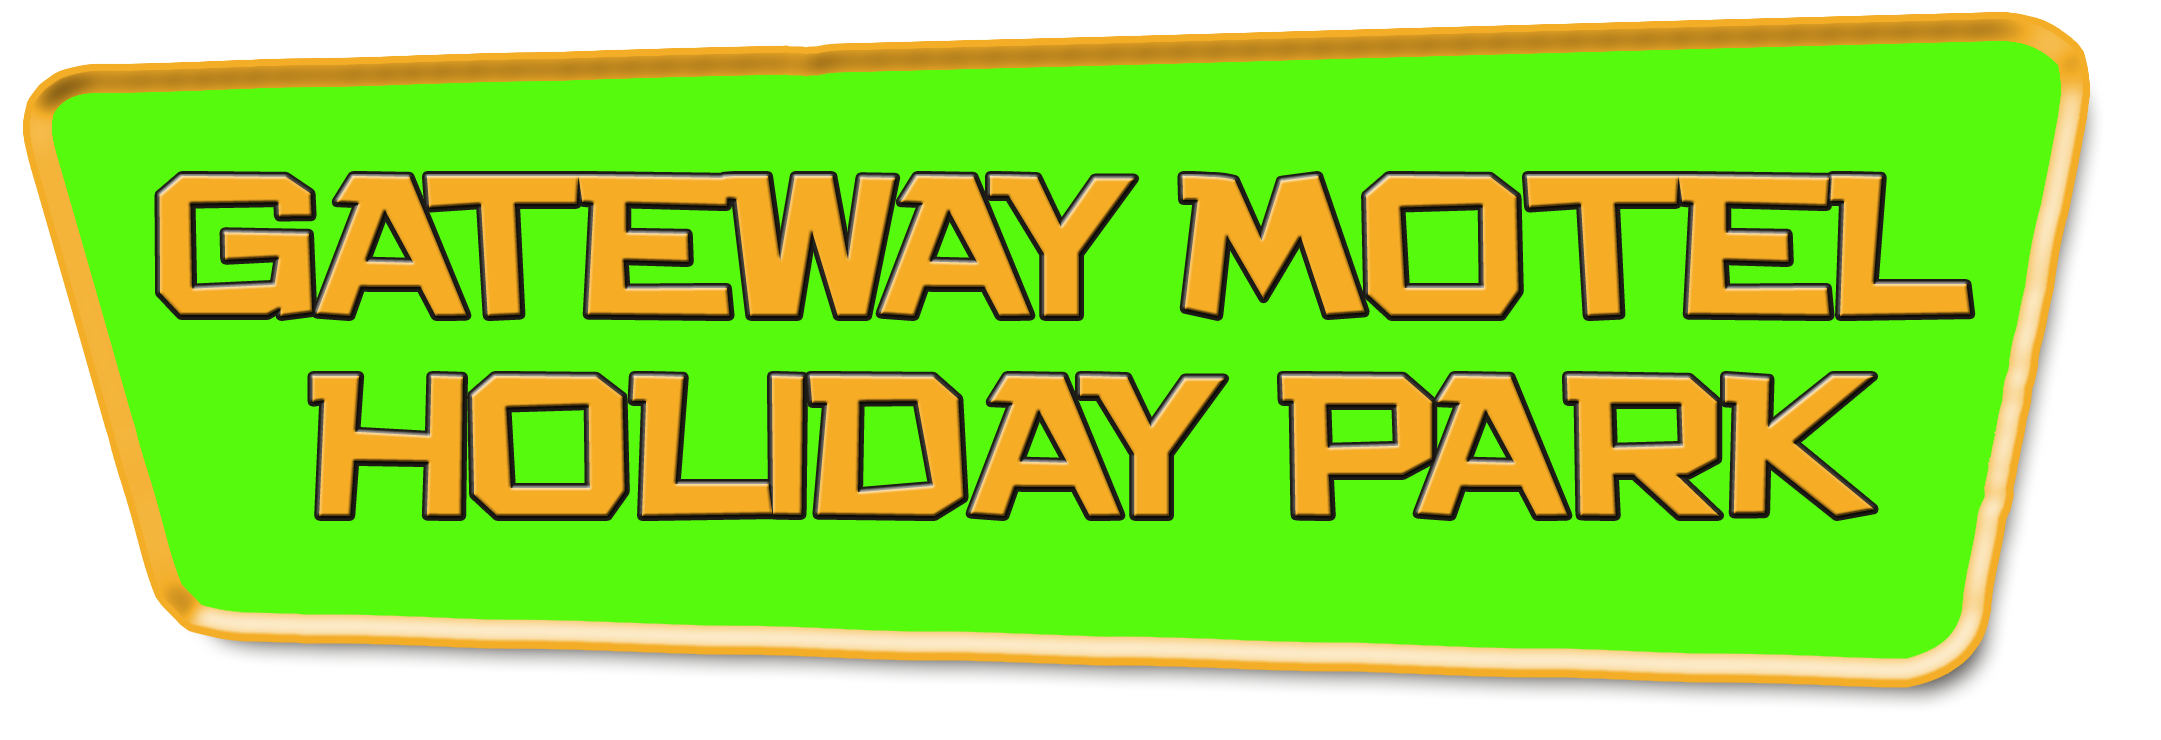 Gateway Motel Holiday Park